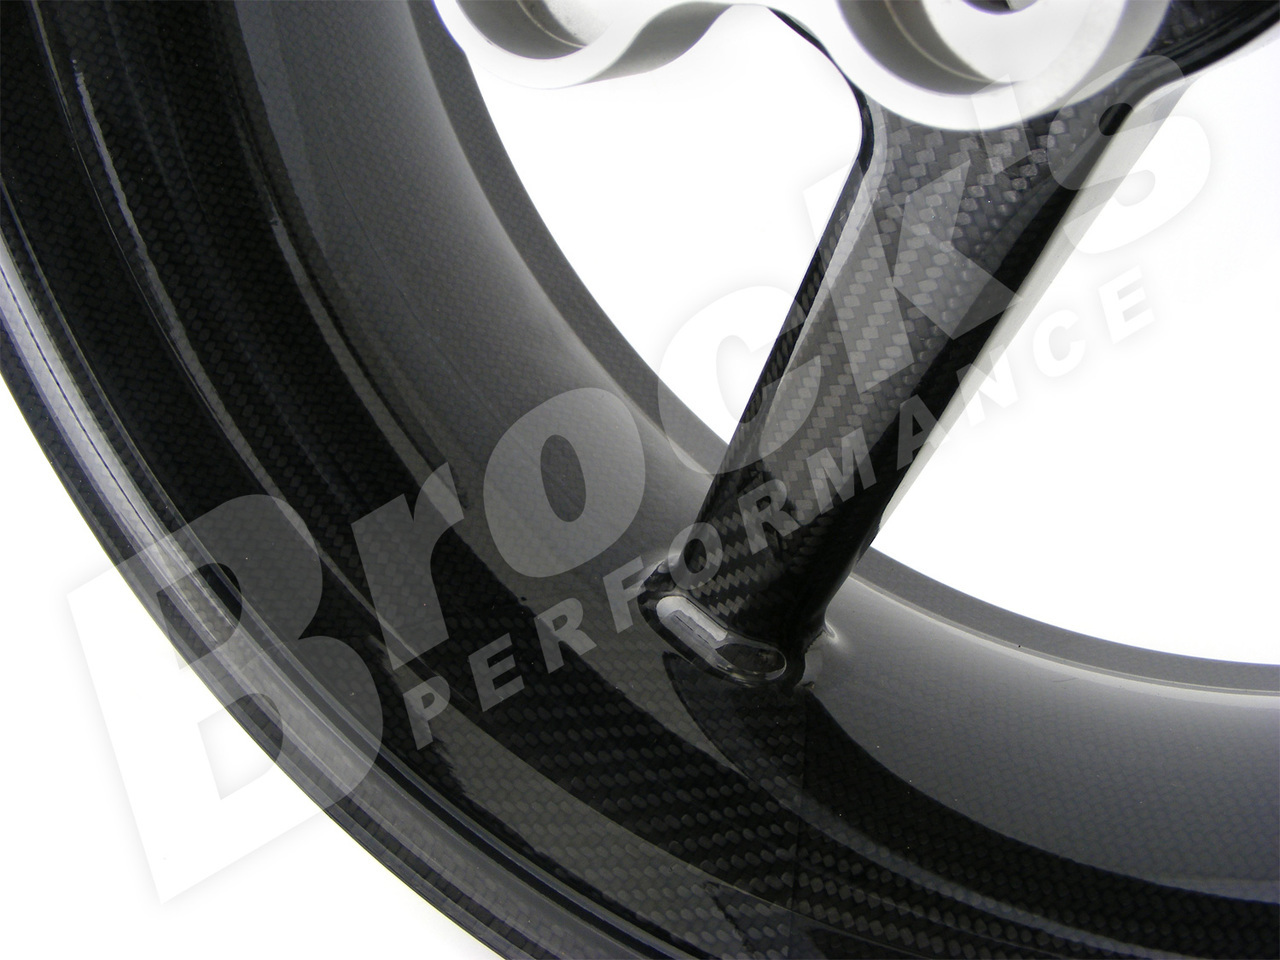 BST Diamond TEK 17 x 5.0 Rear Wheel - Aprilia RS250 (98-03)